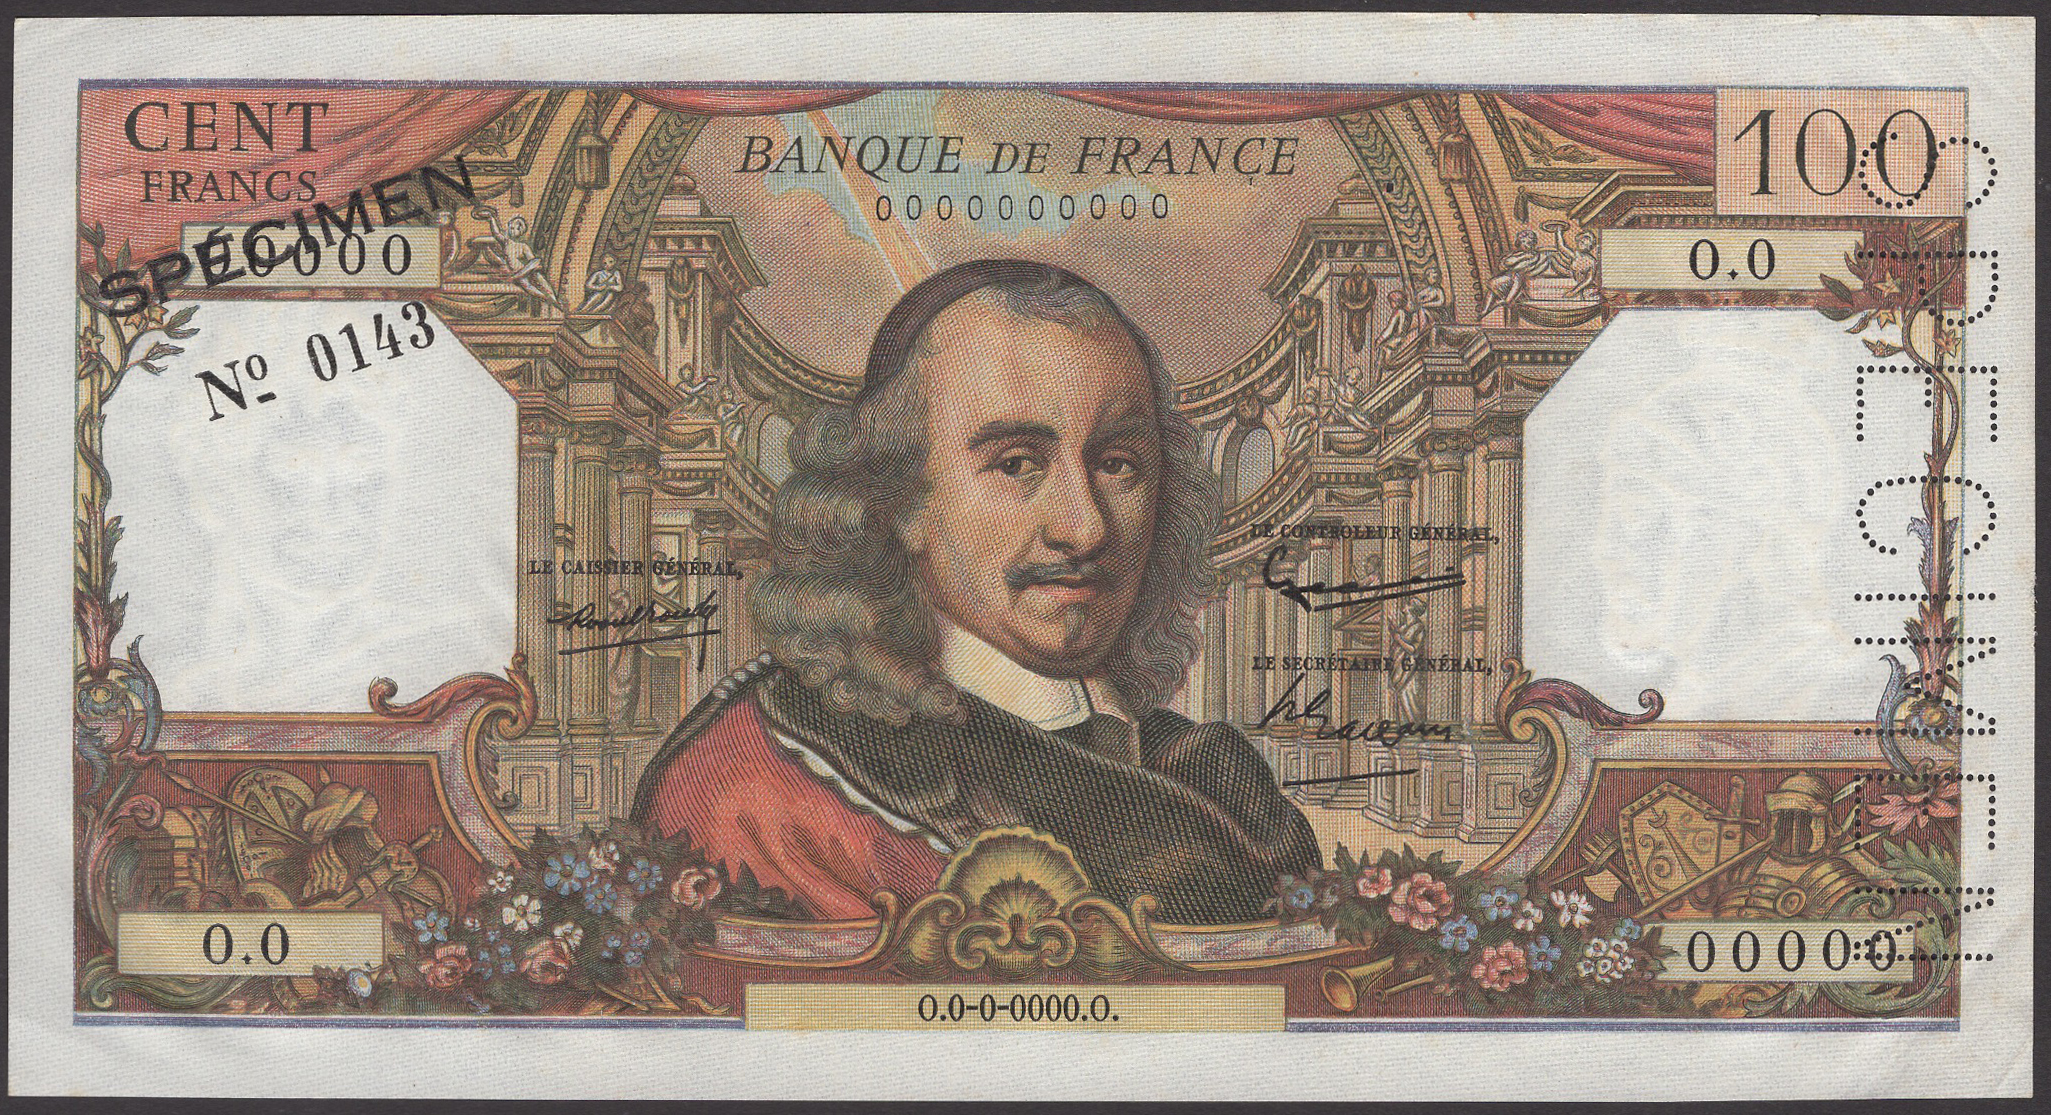 Banque de France, specimen 100 Francs, ND (1964-79), serial number 0.0 00000, black...